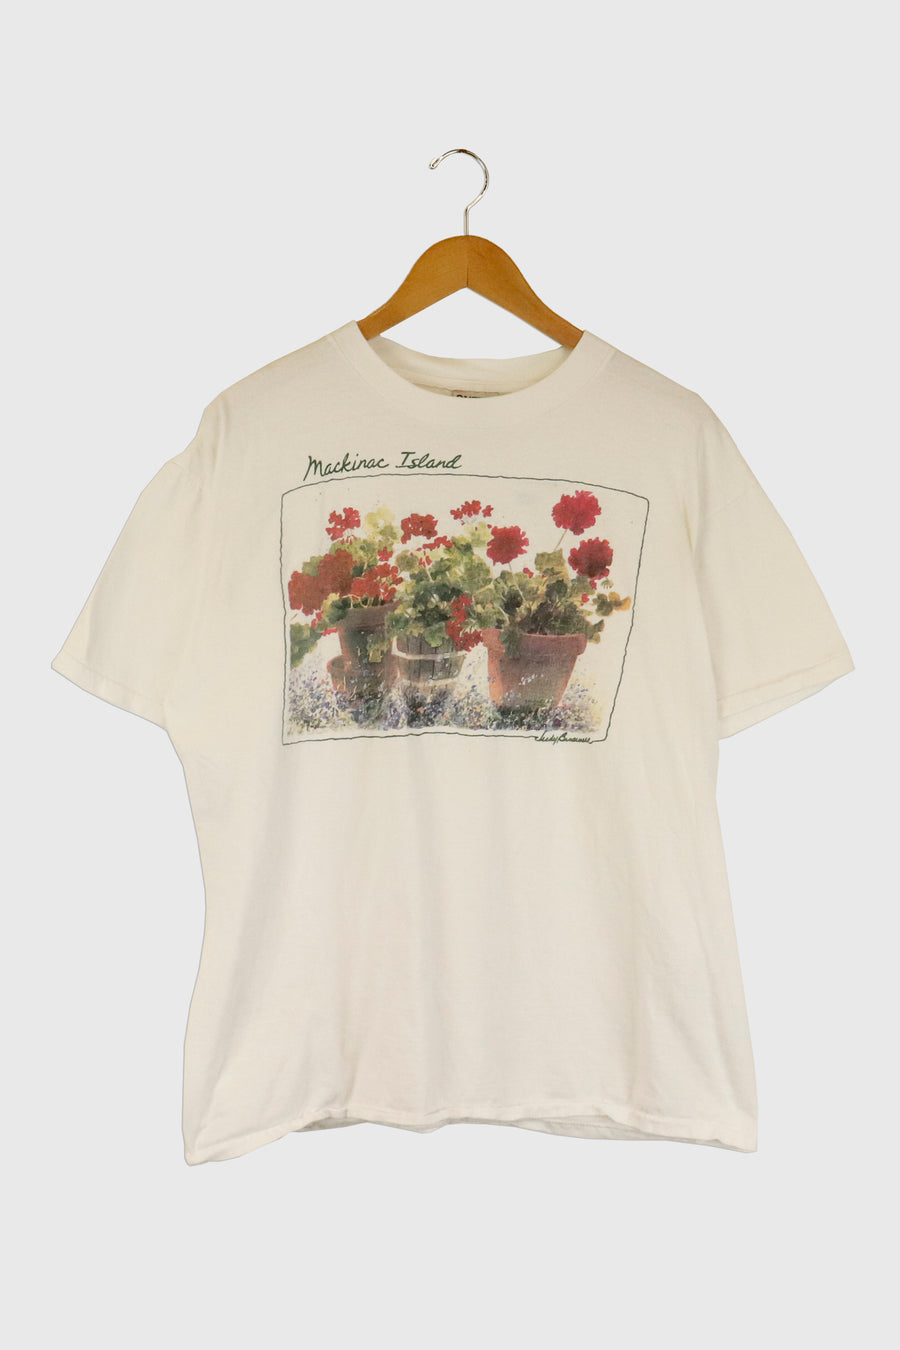 Vintage Mackinac Island Flower Pot Garden T Shirt Sz XL